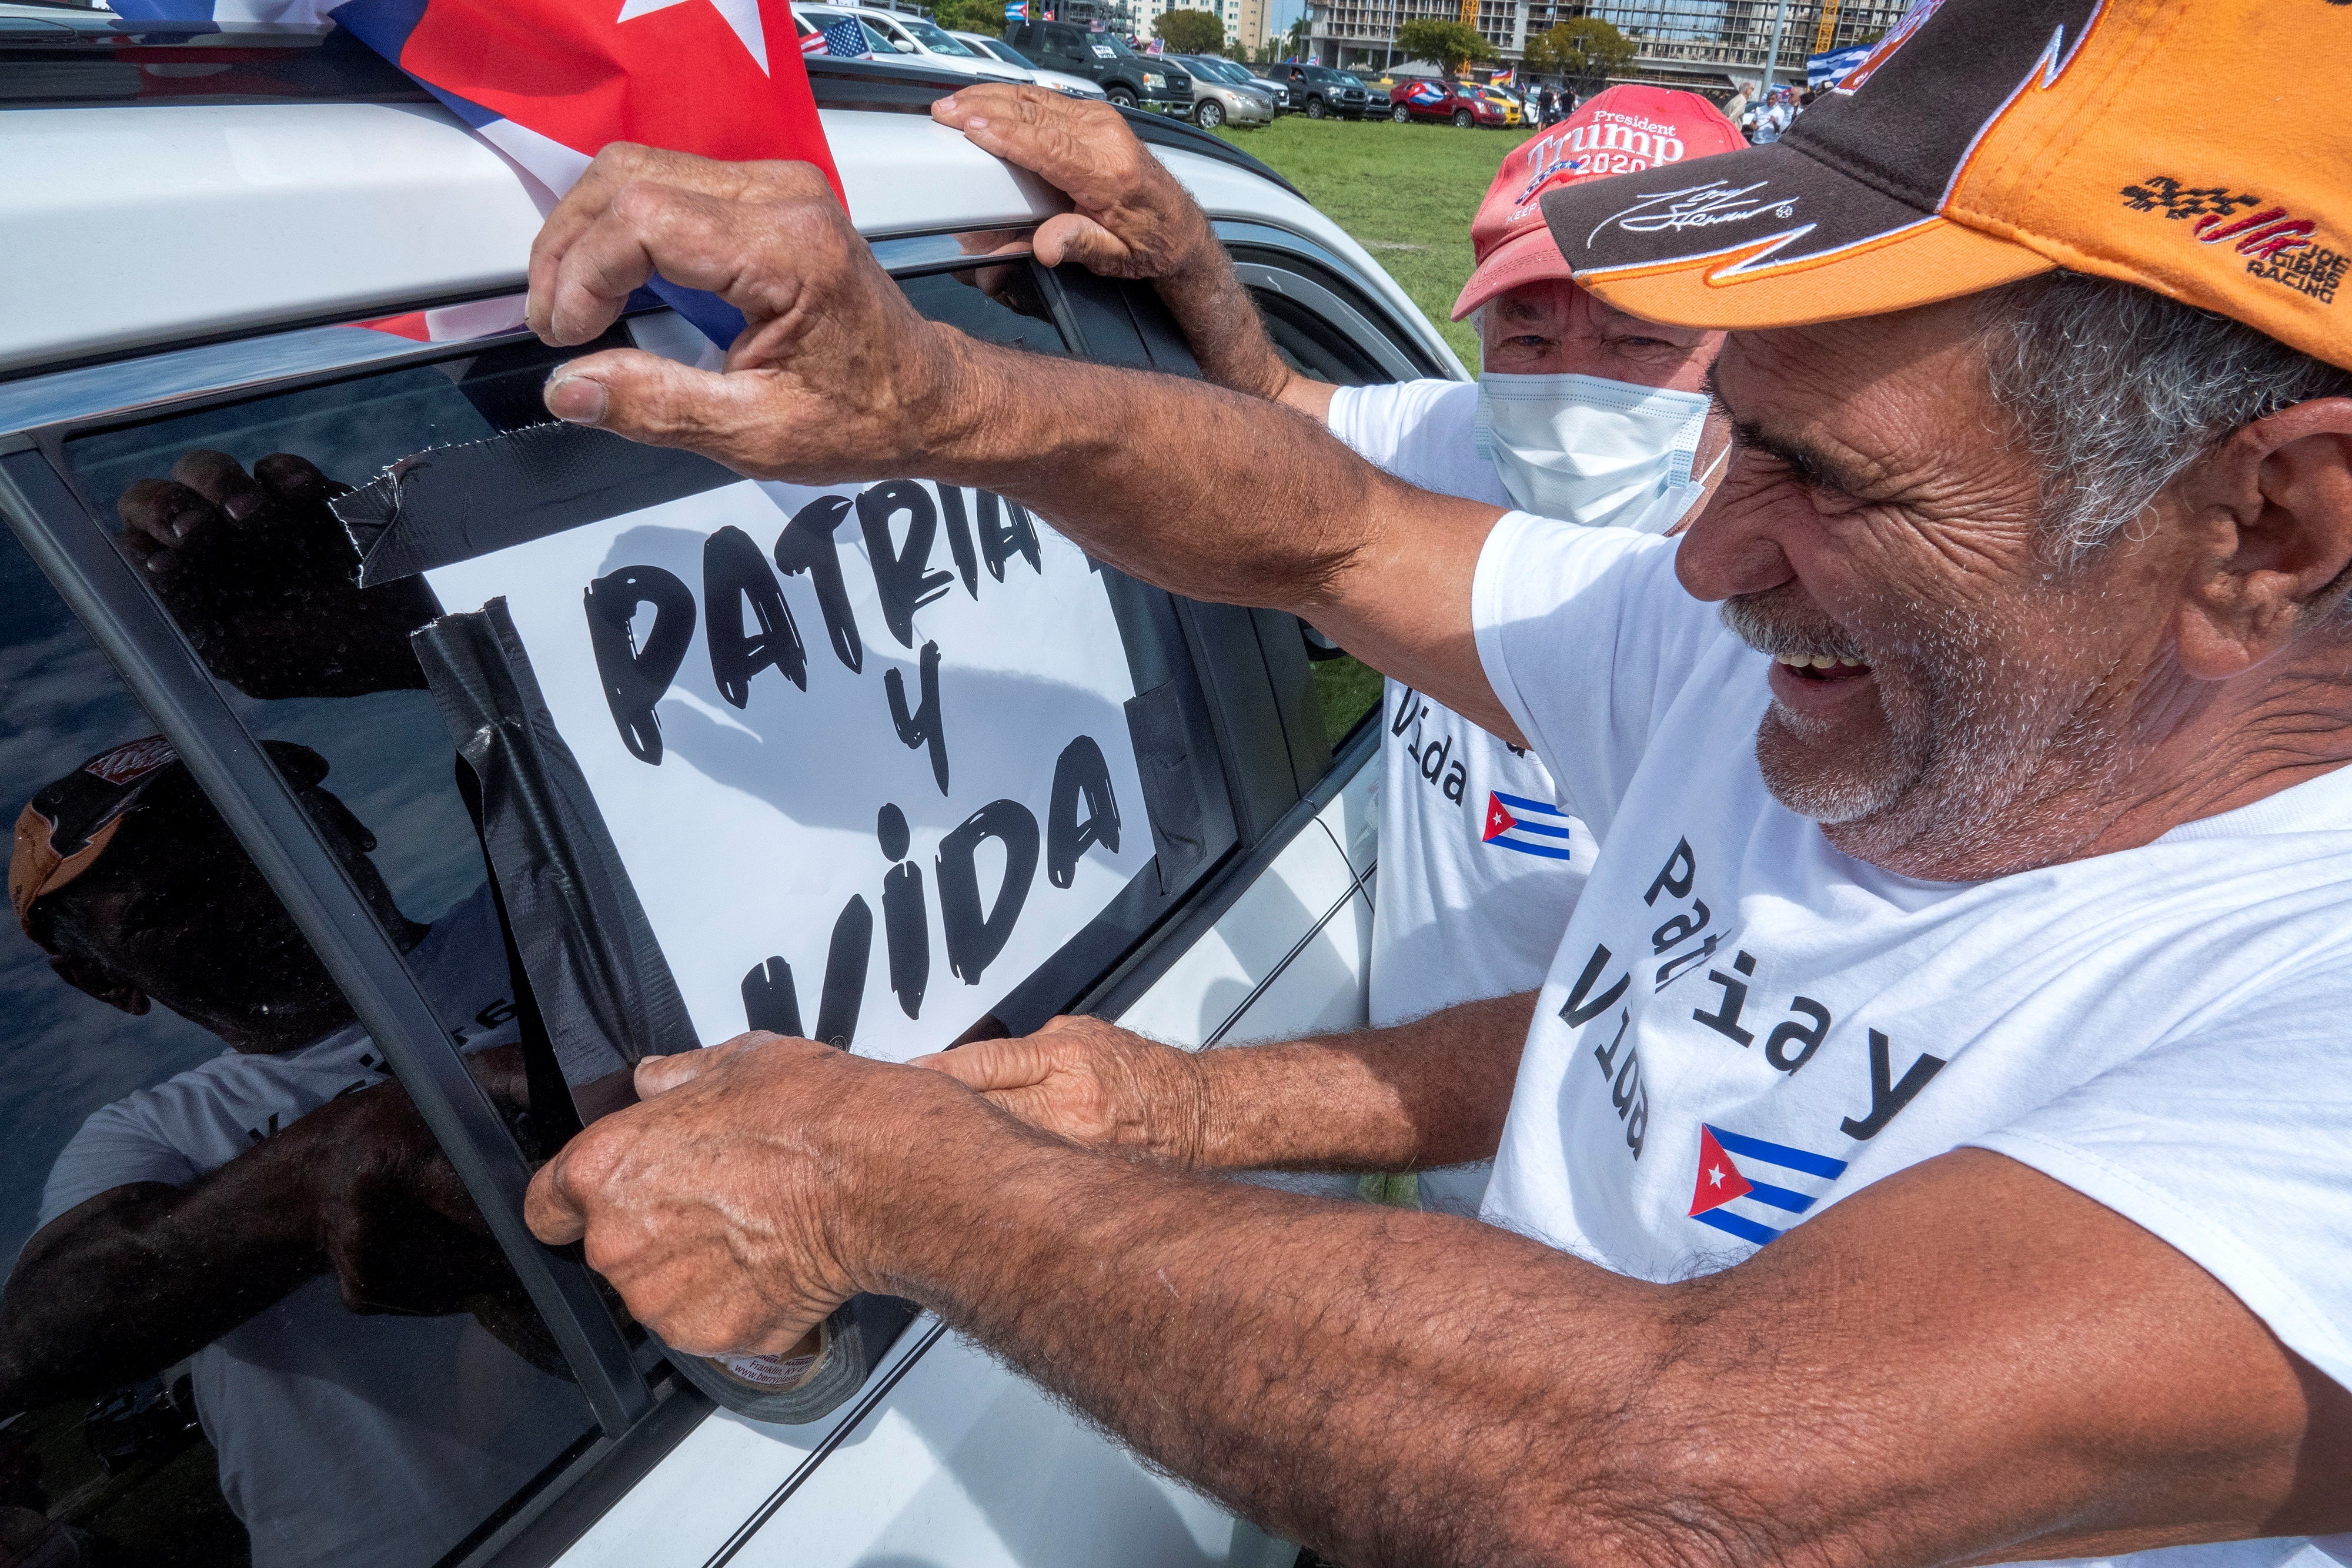 "Patria y Vida" se convirtió en uno de los principales eslóganes de protesta de la disidencia cubana en los últimos meses (EFE/EPA/CRISTOBAL HERRERA-ULASHKEVICH)